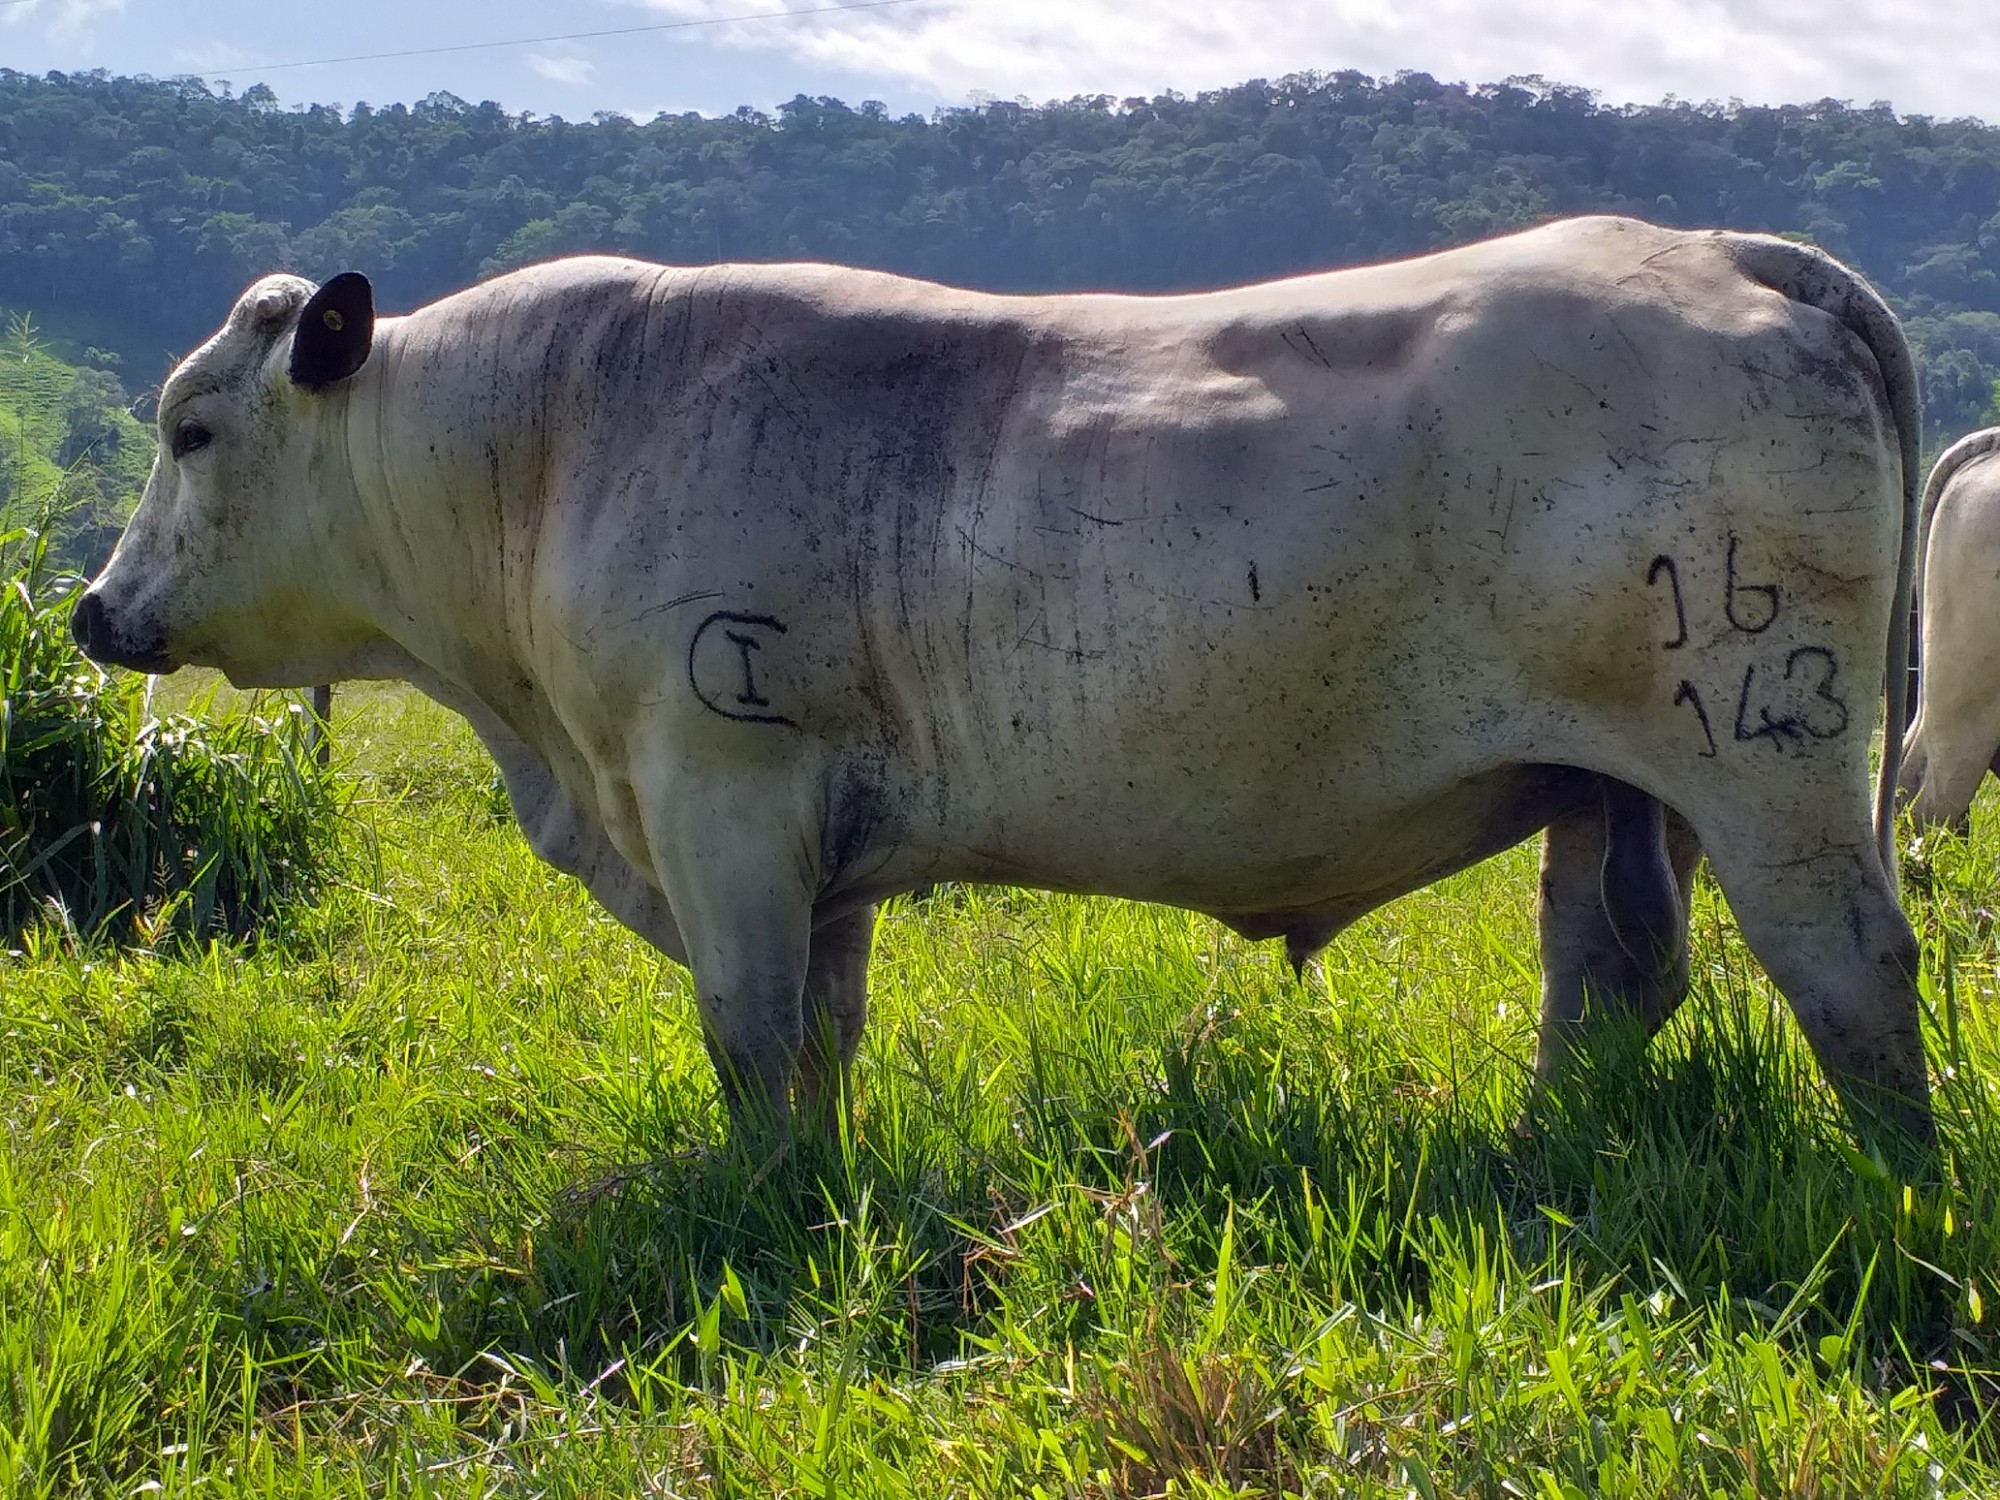 AGROSAVIA subasta cuatro toros BON con excelente condición reproductiva y altos estándares genéticos